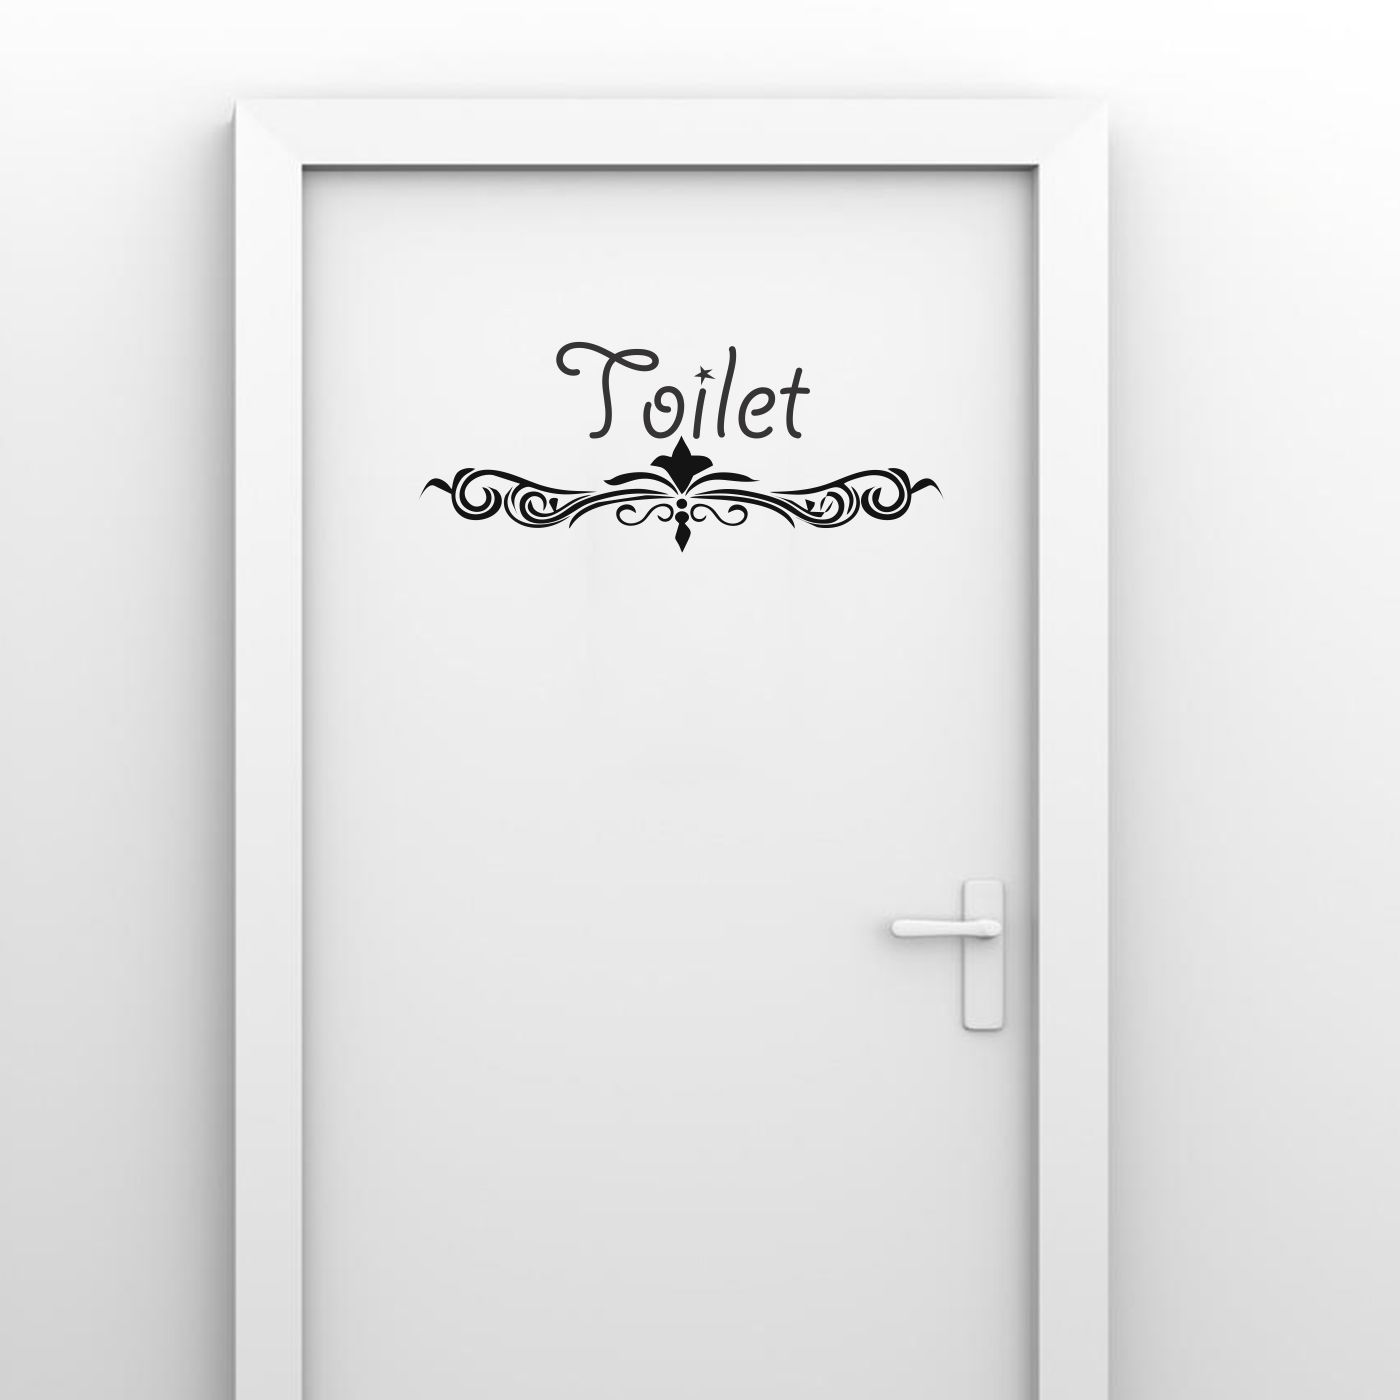 ORKA Medium Toilet Design Wathroom Door Sticker  